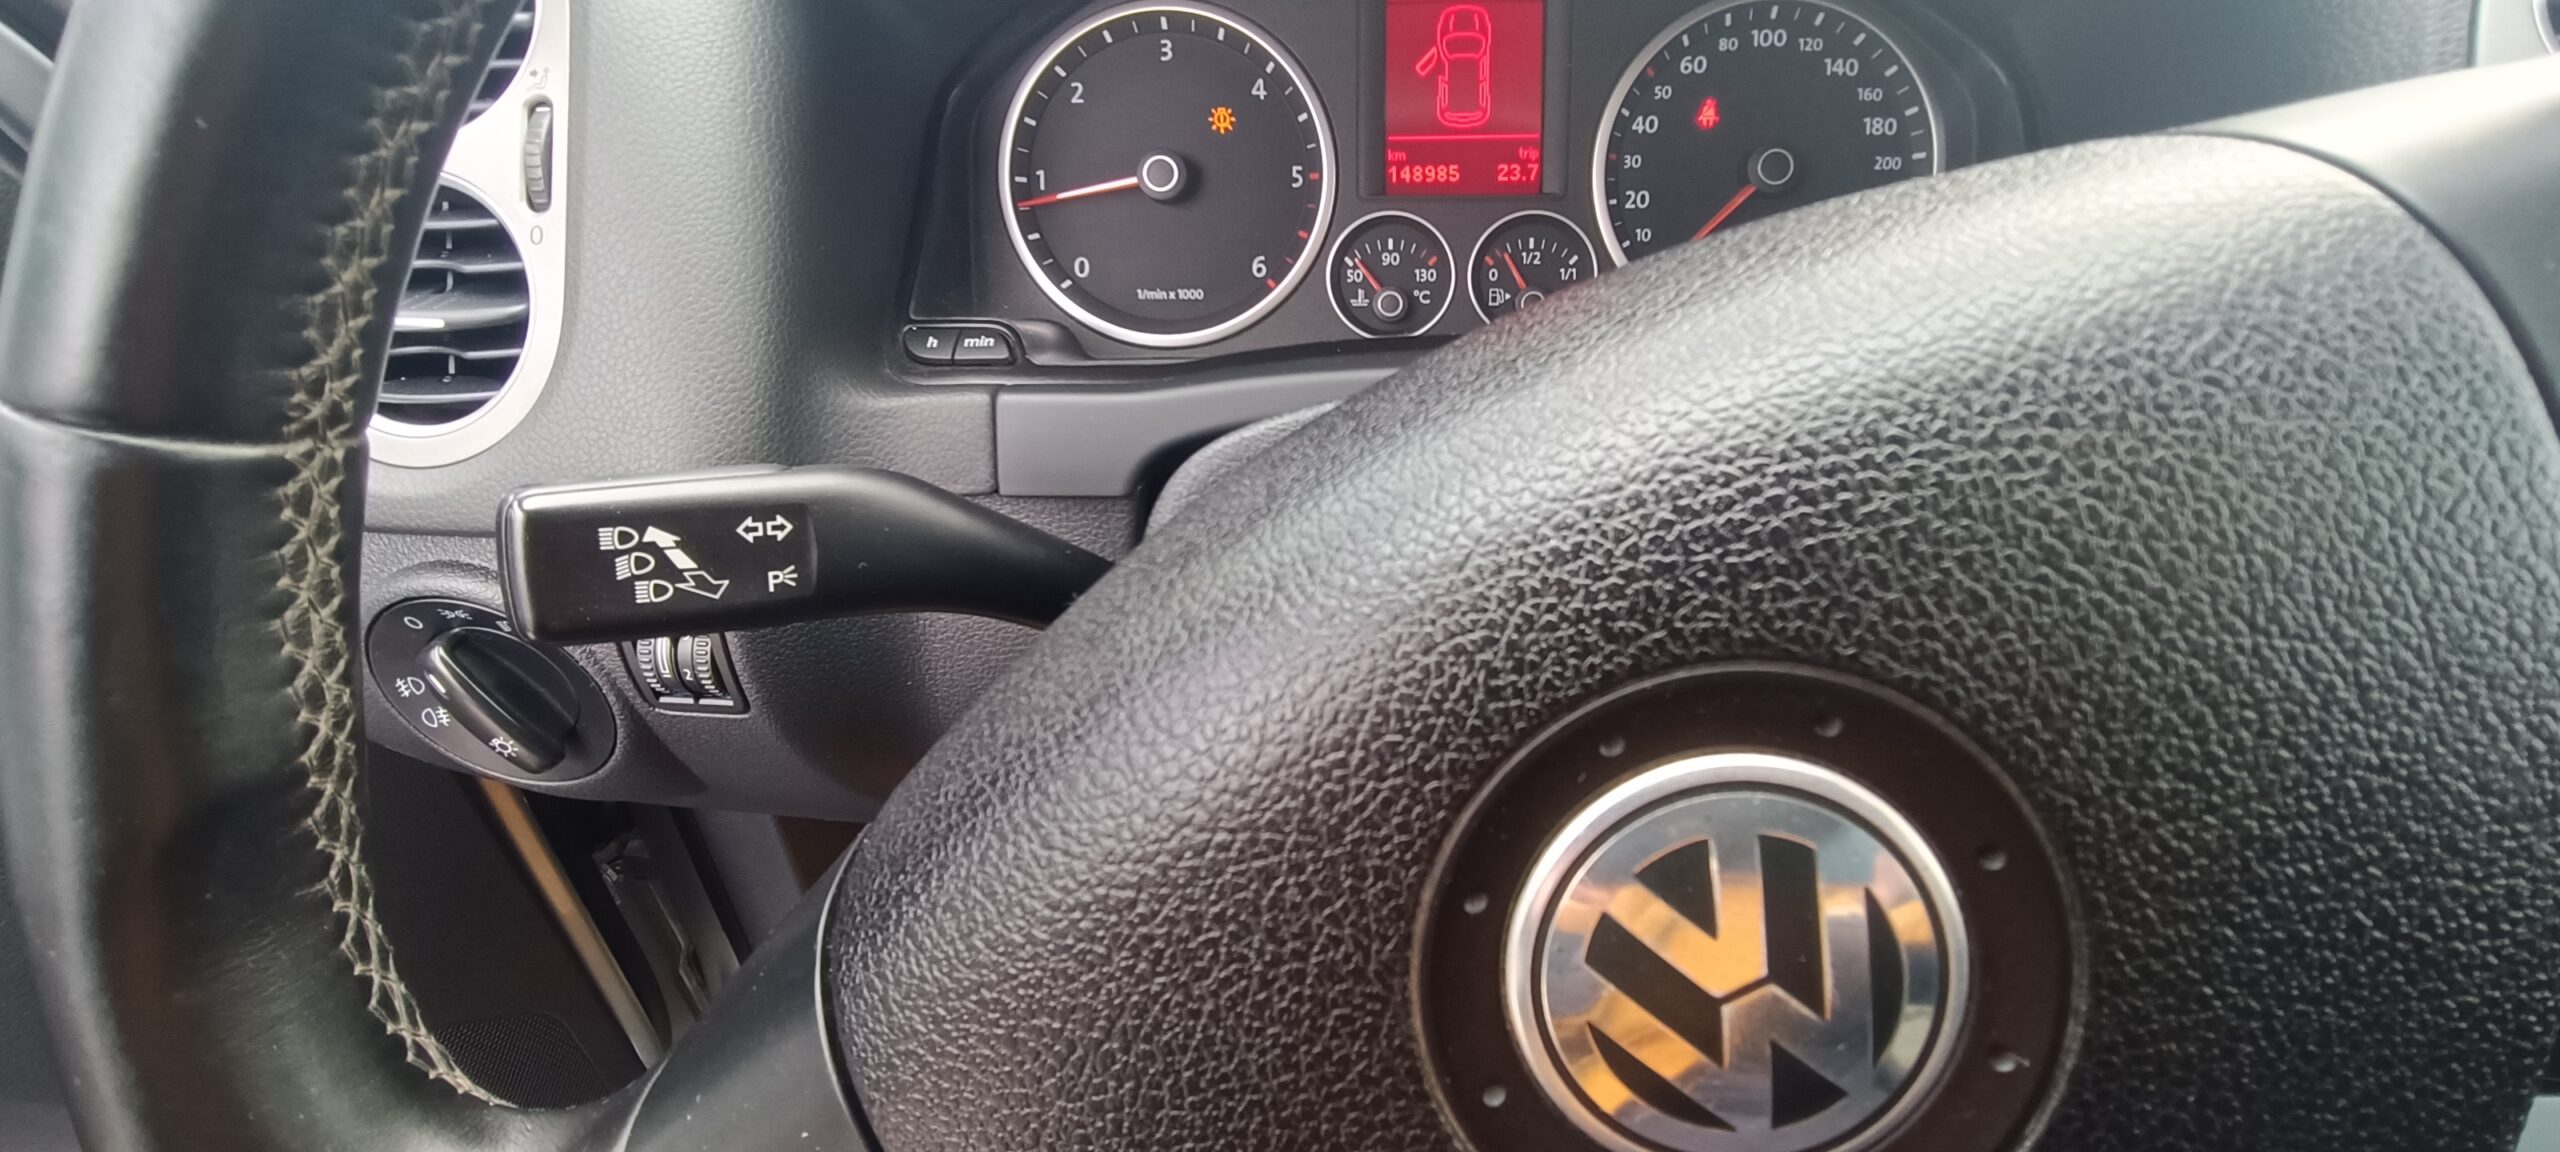 VW Tiguan 4Motion